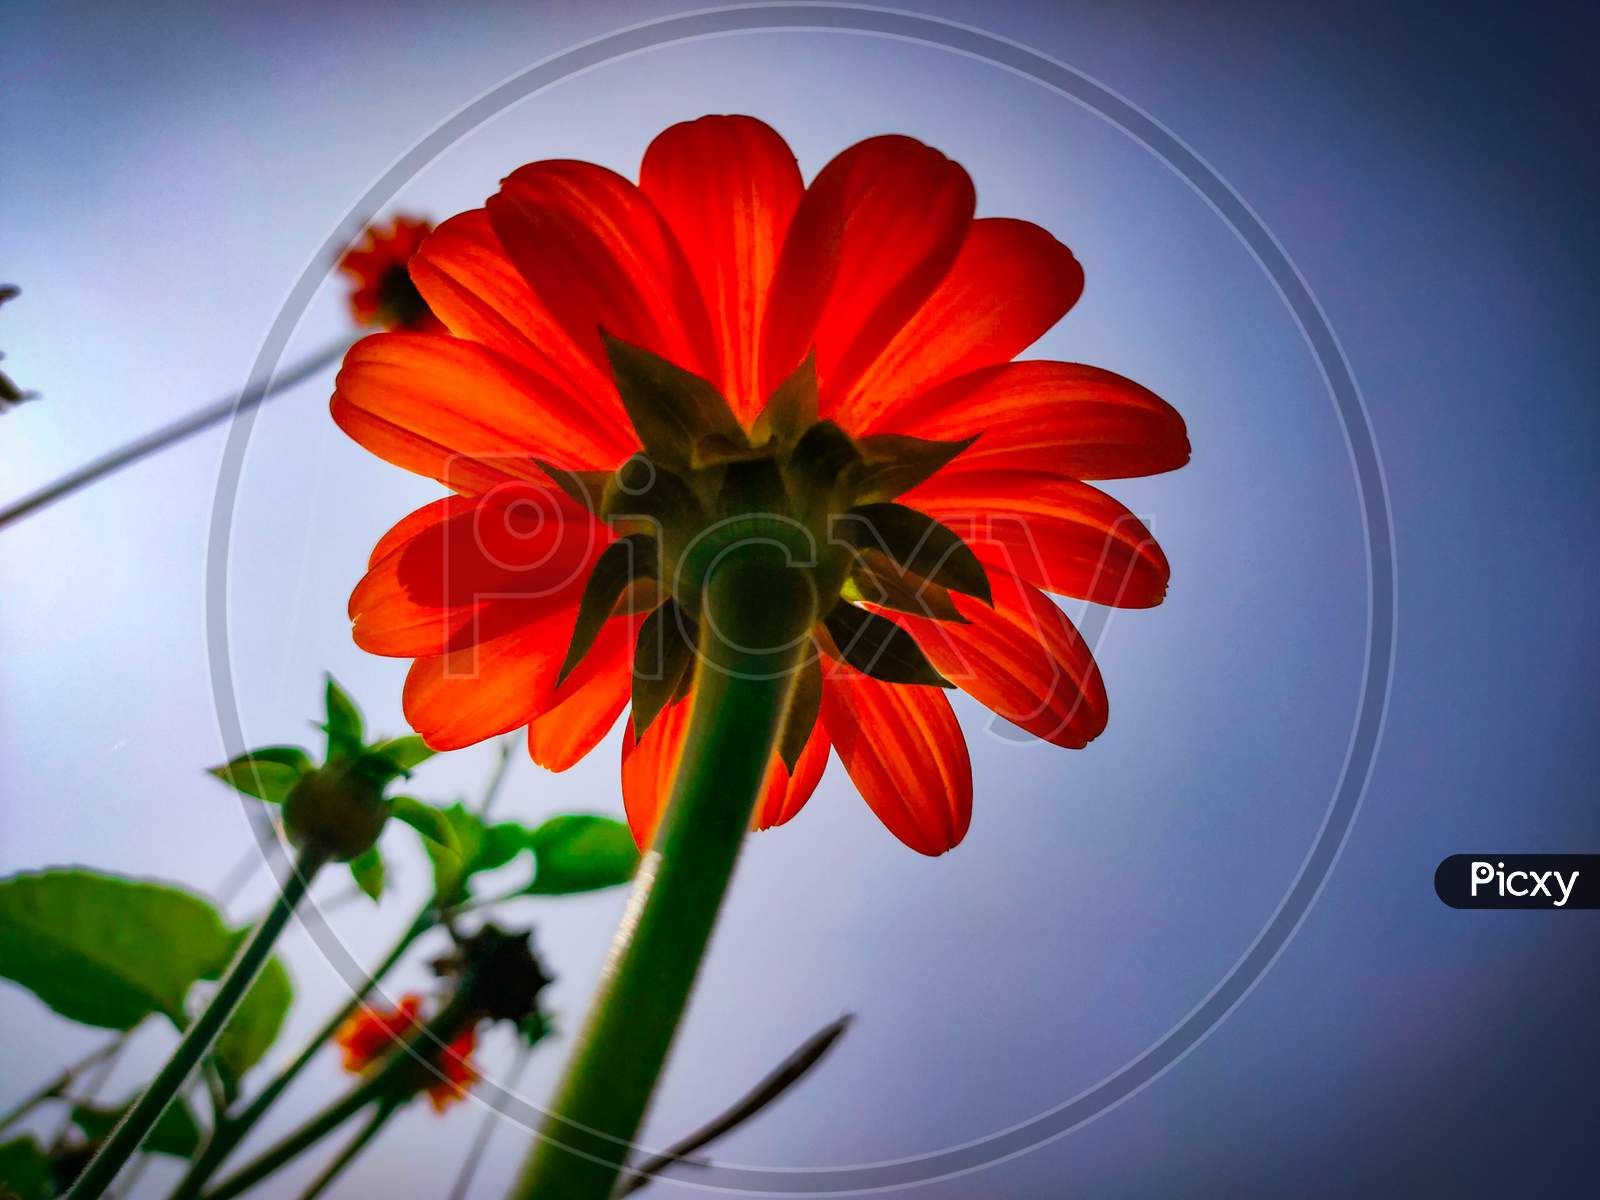 Sky flower